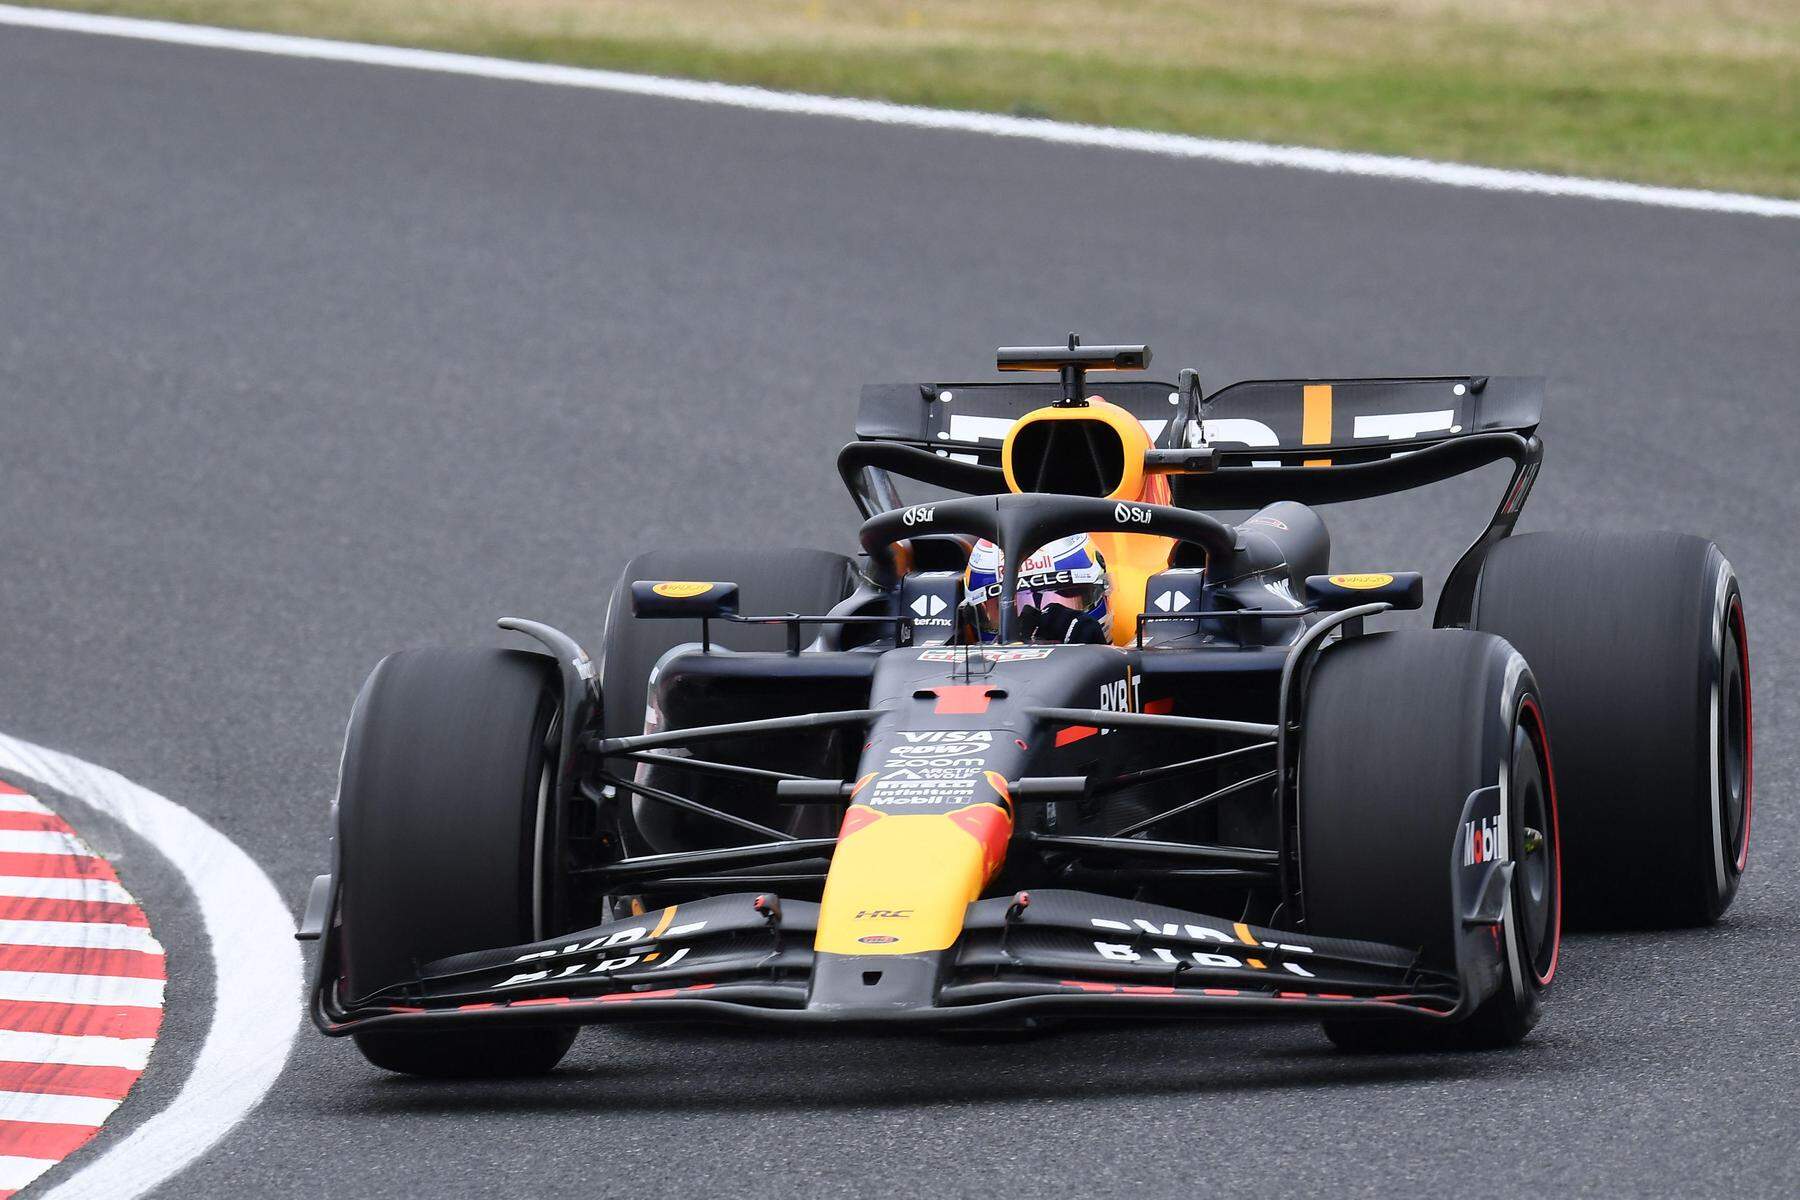 Formel 1 in Suzuka: Verstappen im ersten Training Schnellster, Sargeant krachte in Streckenbegrenzung